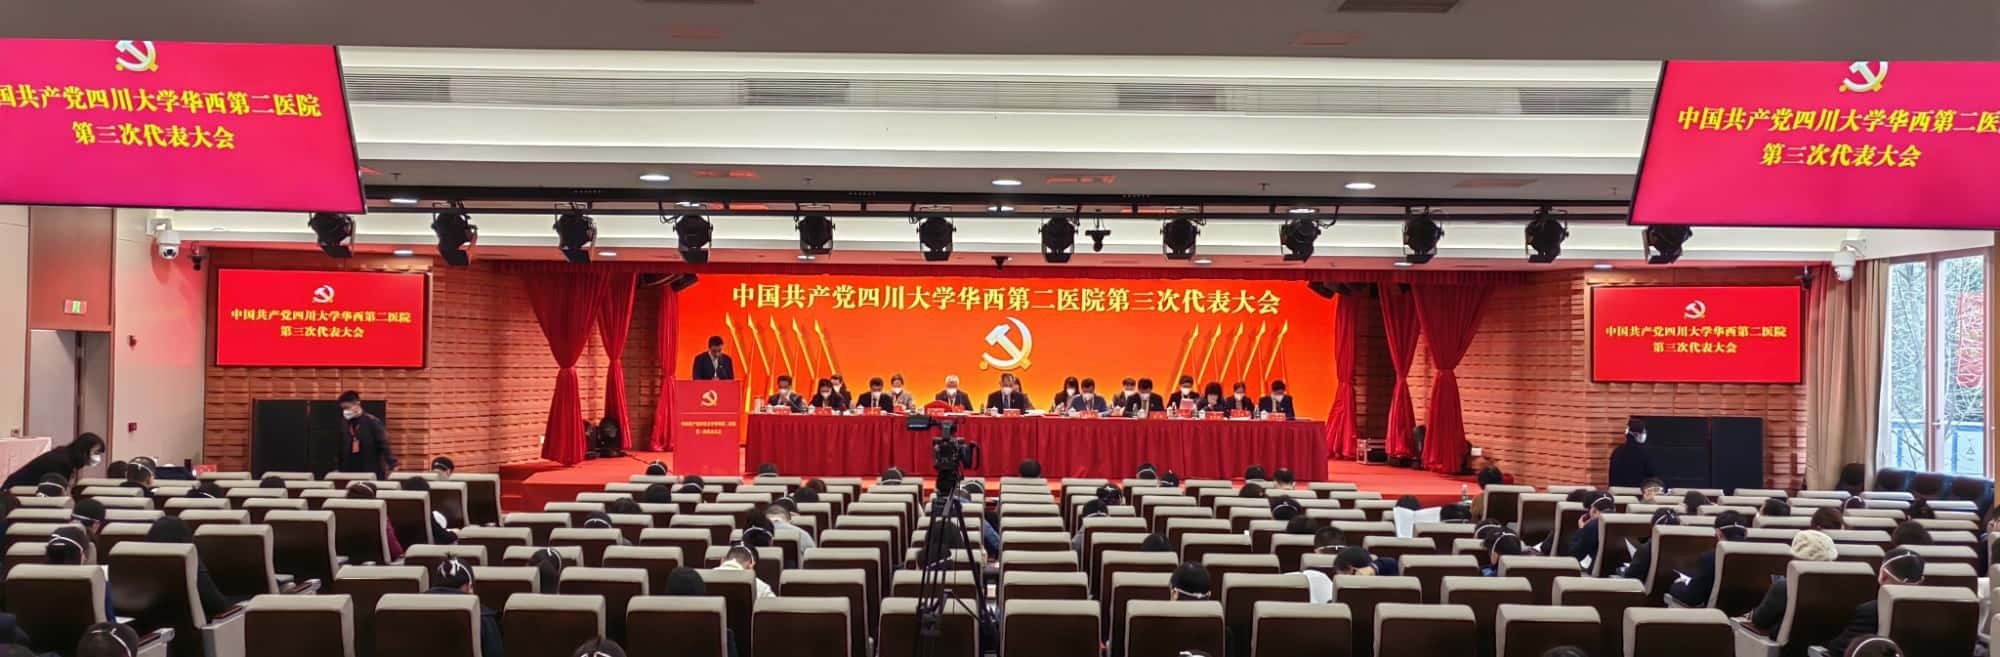 中国共产党四川大学华西第二医院第三次代表大会成功召开